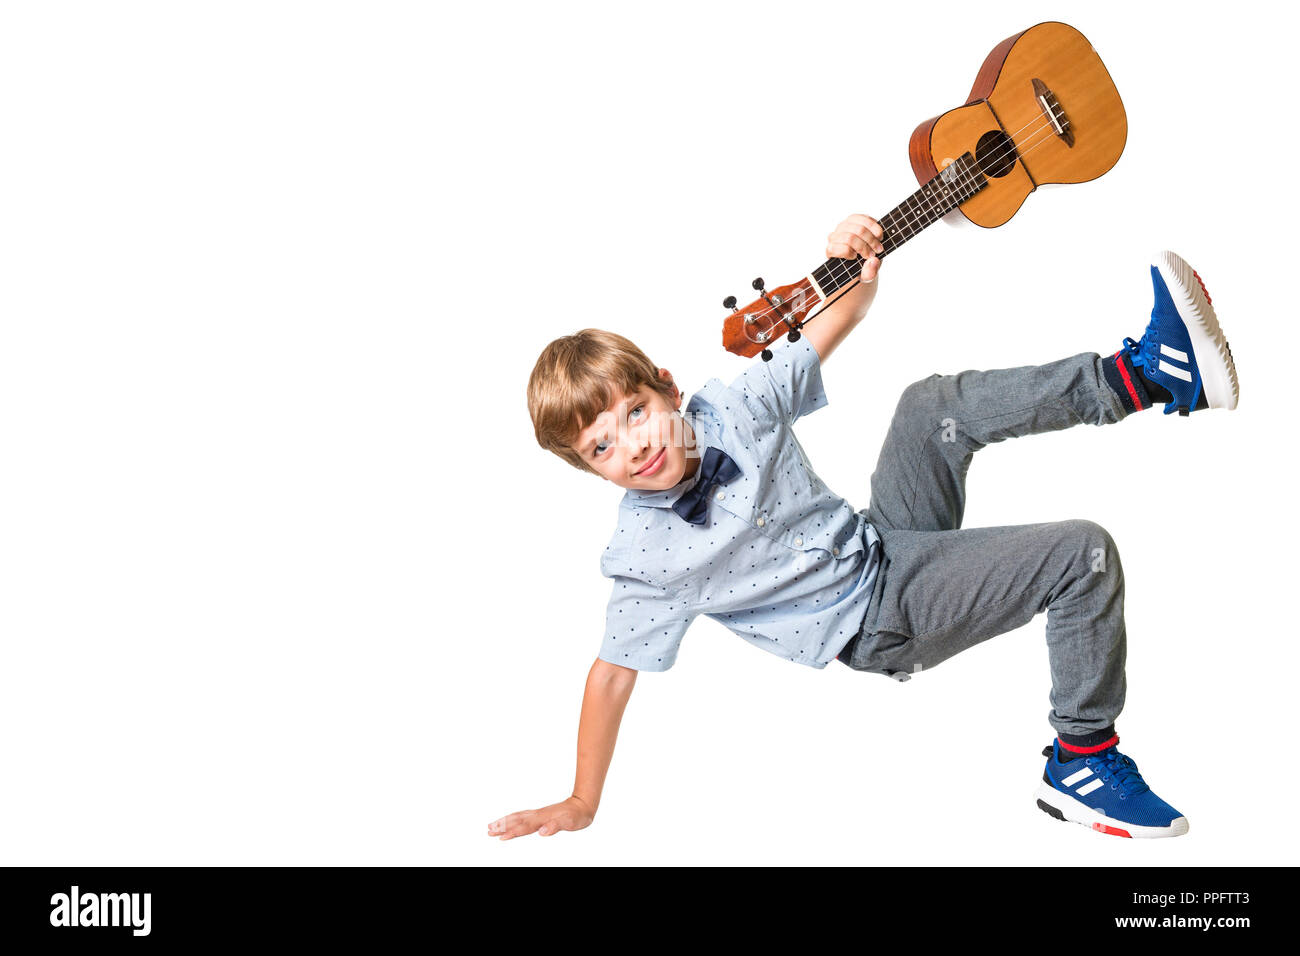 Adorable jeune garçon posant avec ukulele dans sa main, isolé sur fond blanc avec un espace réservé au texte Banque D'Images